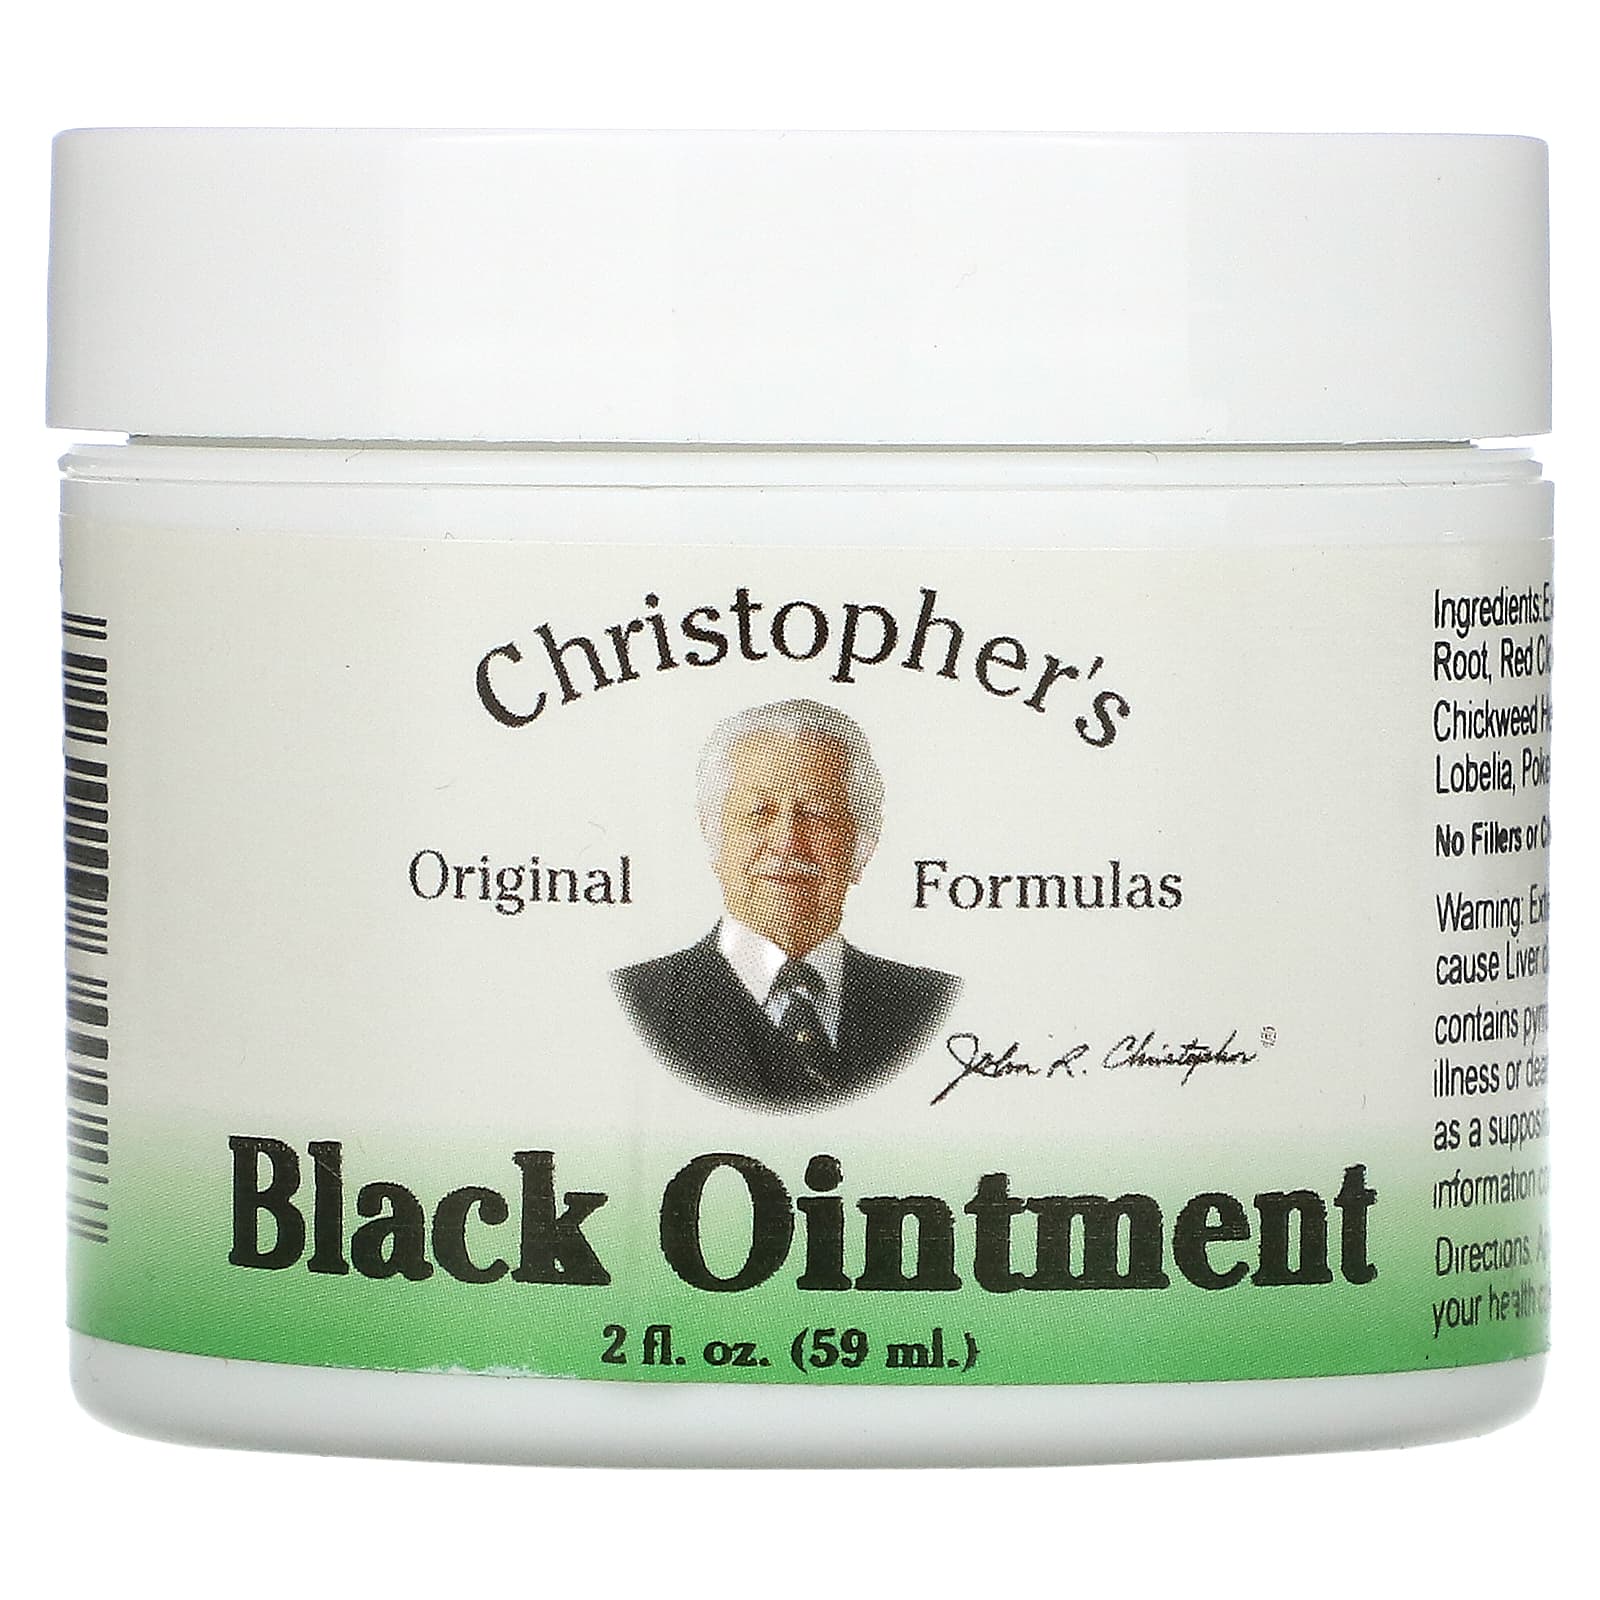 Christopher's Original Formulas Black Ointment противовоспалительная 59 мл (2 жидкие унции) christopher s original formulas экстракт relax eze 2 жидкие унции 59 мл